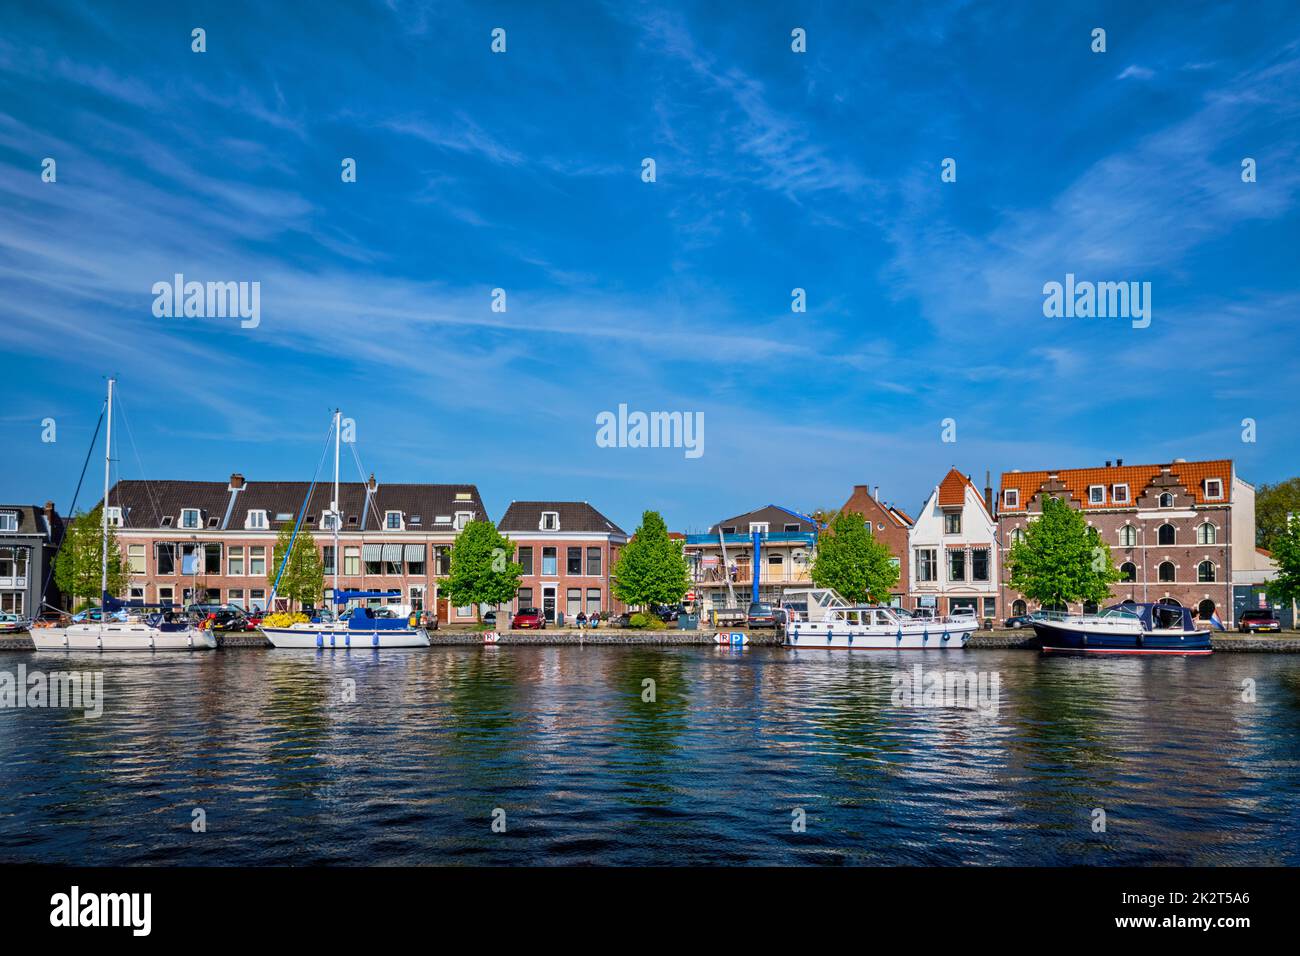 Des bateaux et des maisons sur la rivière Spaarne. Haarlem, Pays-Bas Banque D'Images